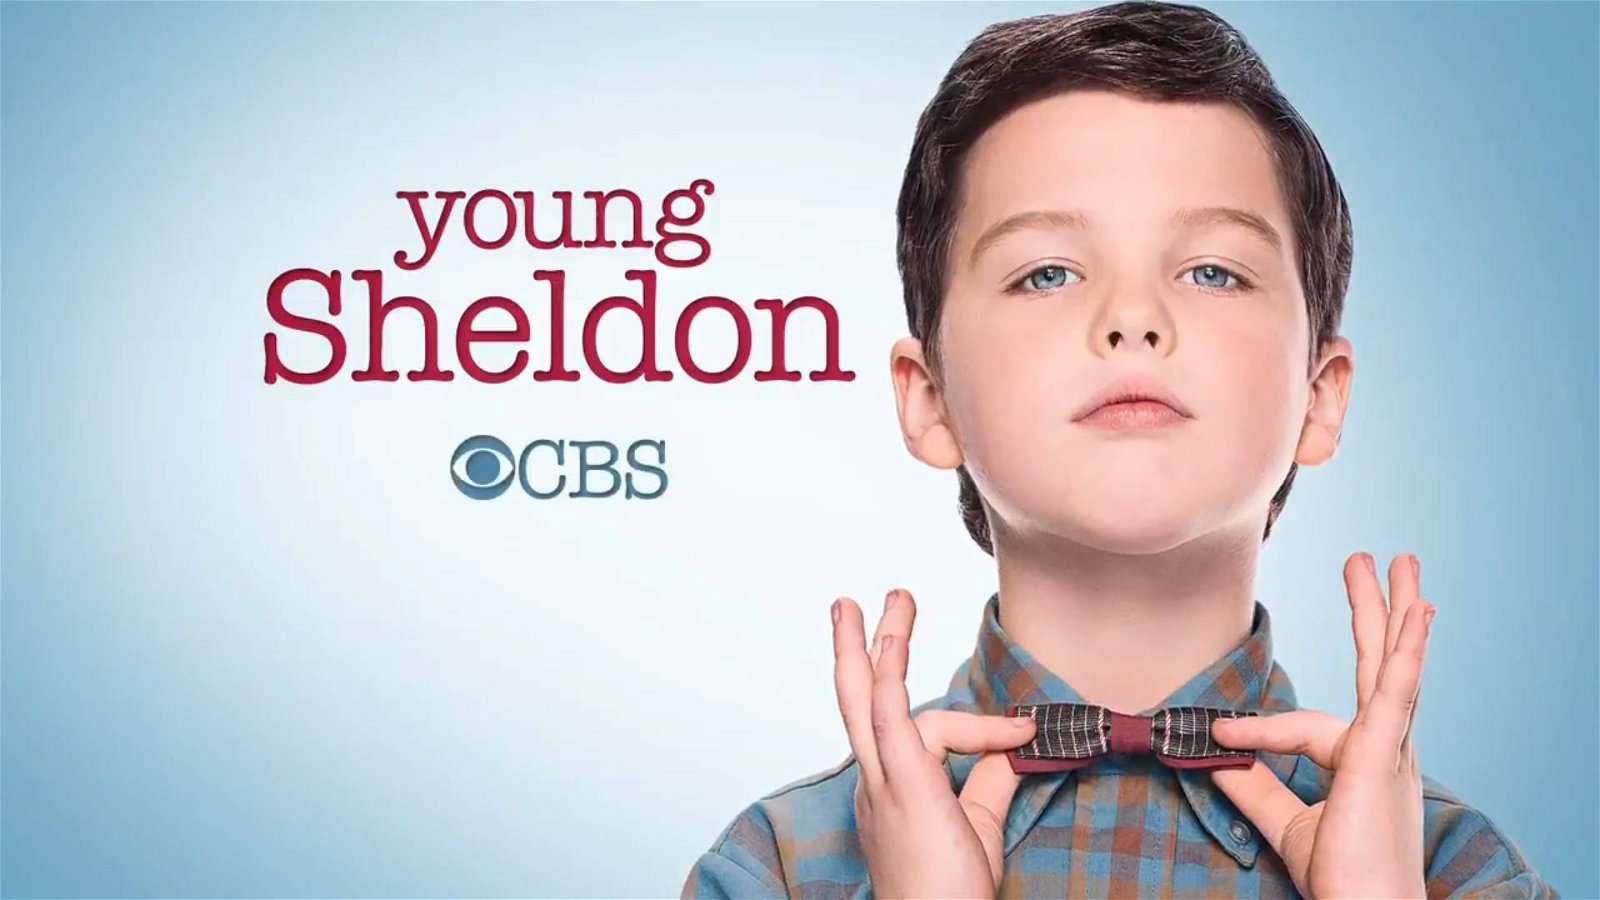 Immagine di Young Sheldon: un effetto sonoro potrebbe costare alla serie una multa da 300.000 dollari